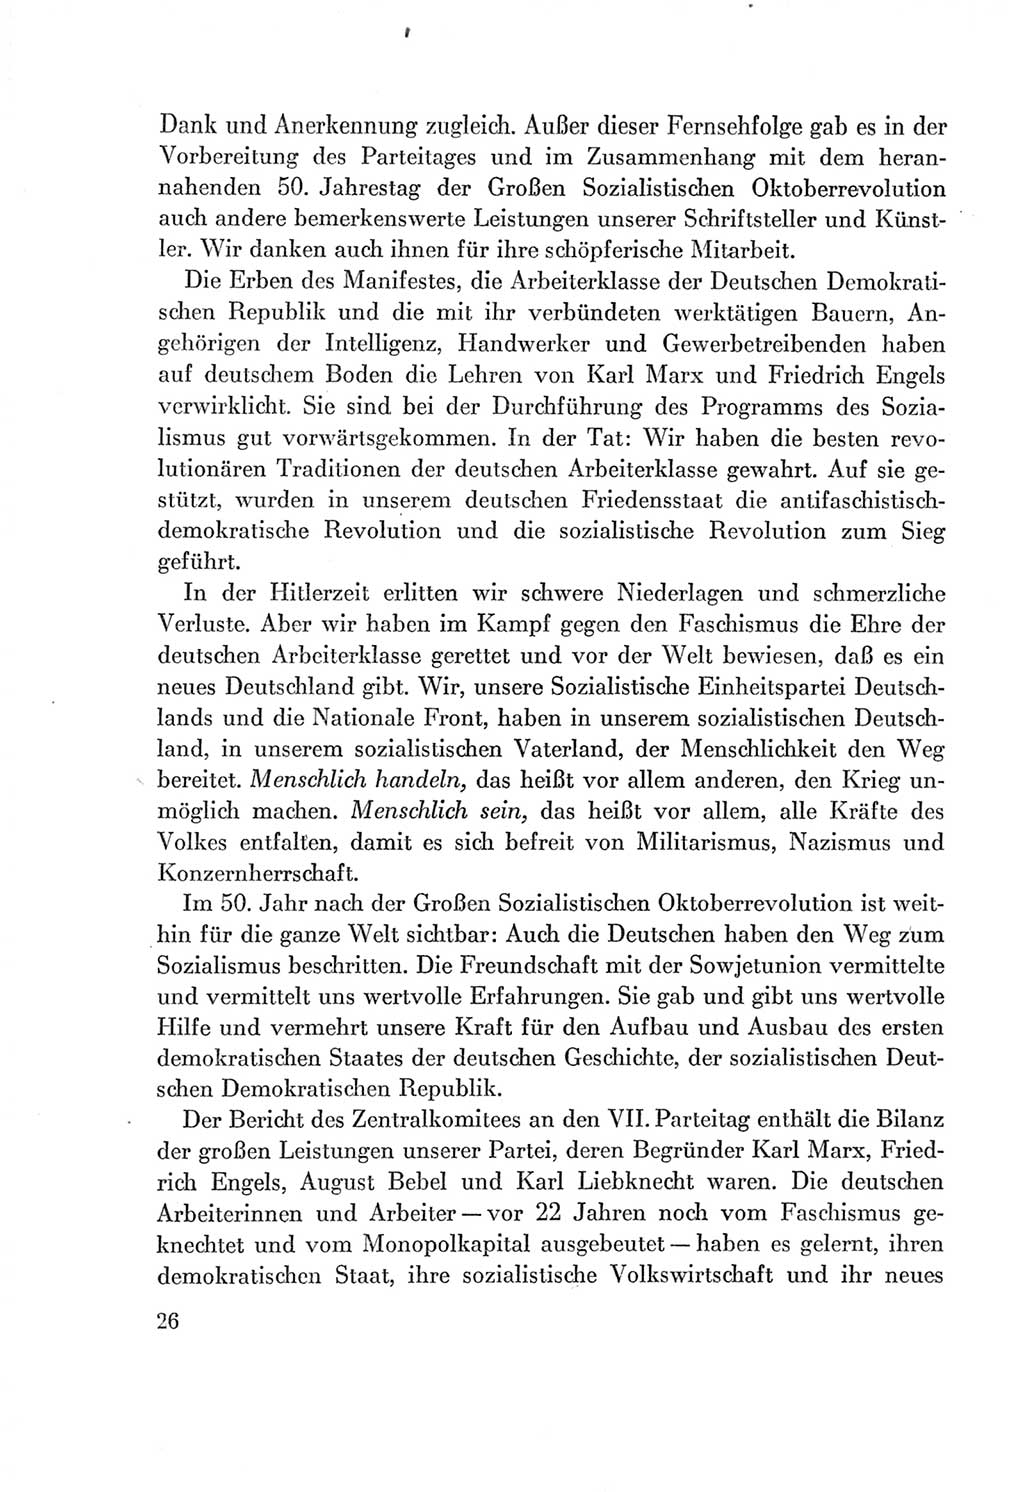 Protokoll der Verhandlungen des Ⅶ. Parteitages der Sozialistischen Einheitspartei Deutschlands (SED) [Deutsche Demokratische Republik (DDR)] 1967, Band Ⅰ, Seite 26 (Prot. Verh. Ⅶ. PT SED DDR 1967, Bd. Ⅰ, S. 26)